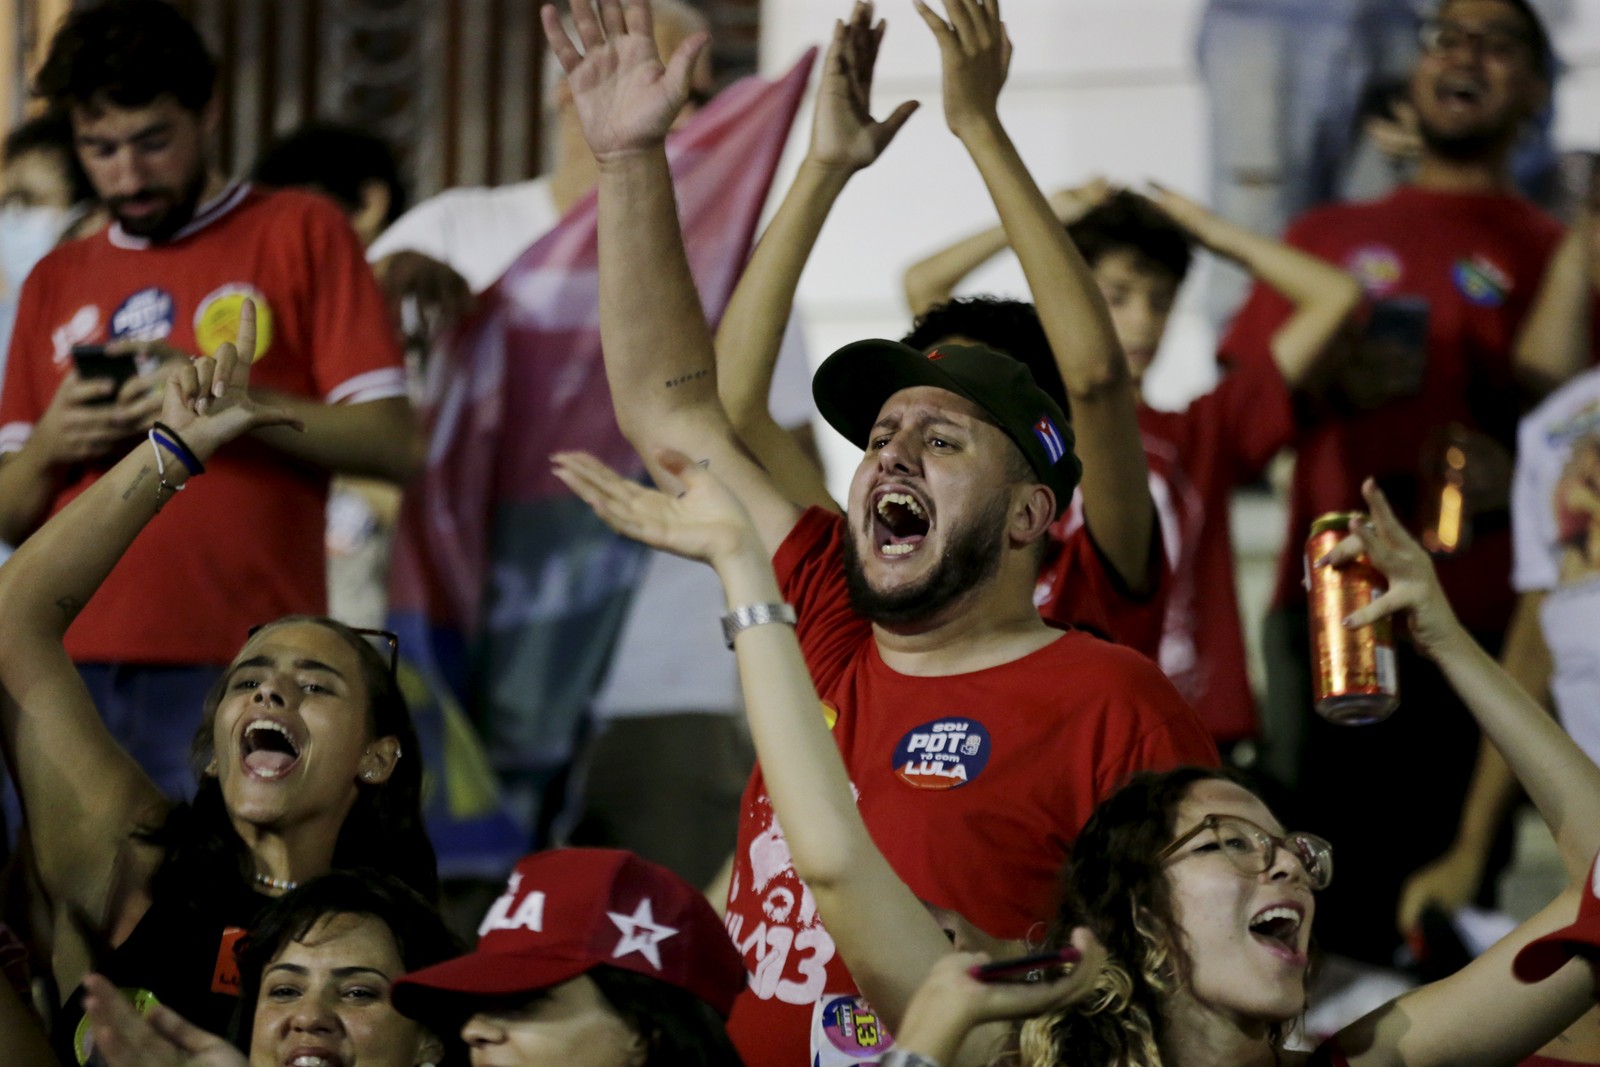 Eleitores de Lula festejam no Centro do Rio — Foto: Domingos Peixoto/Agência O Globo